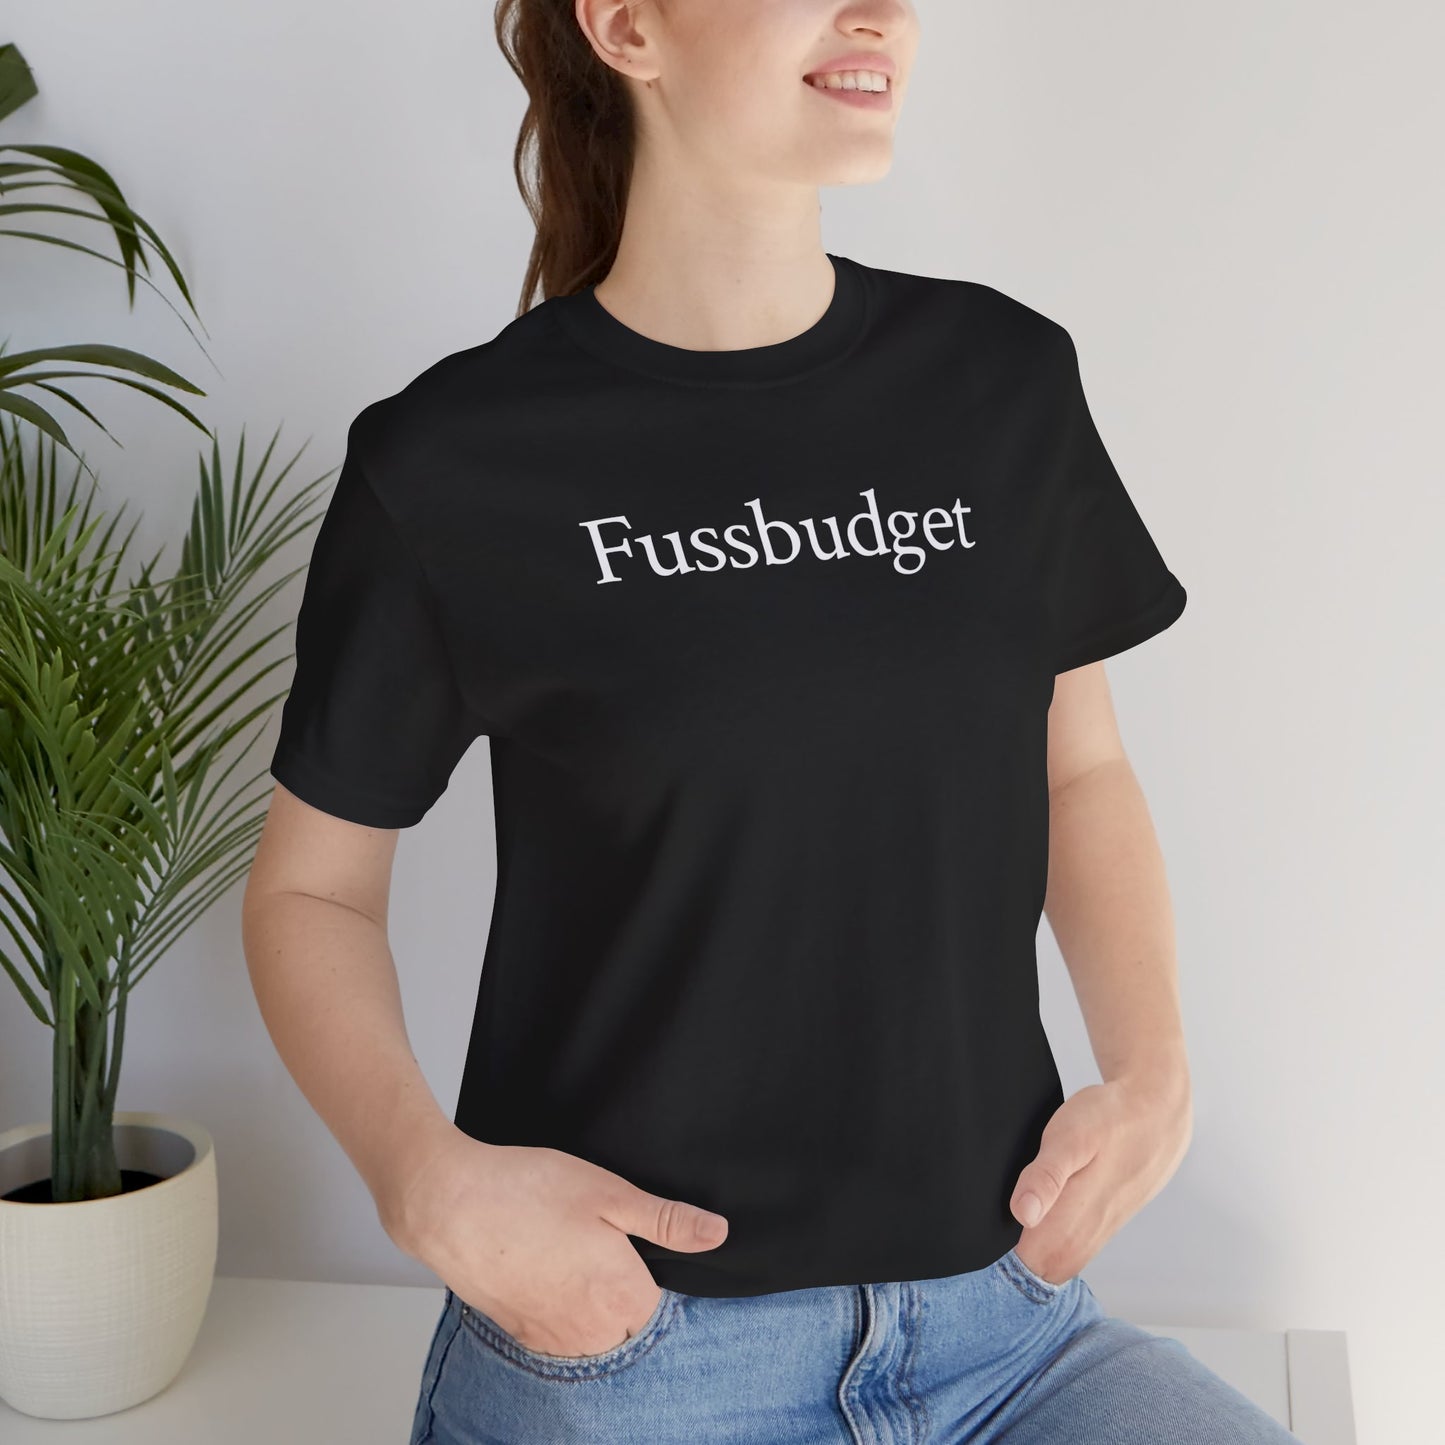 Fussbudget